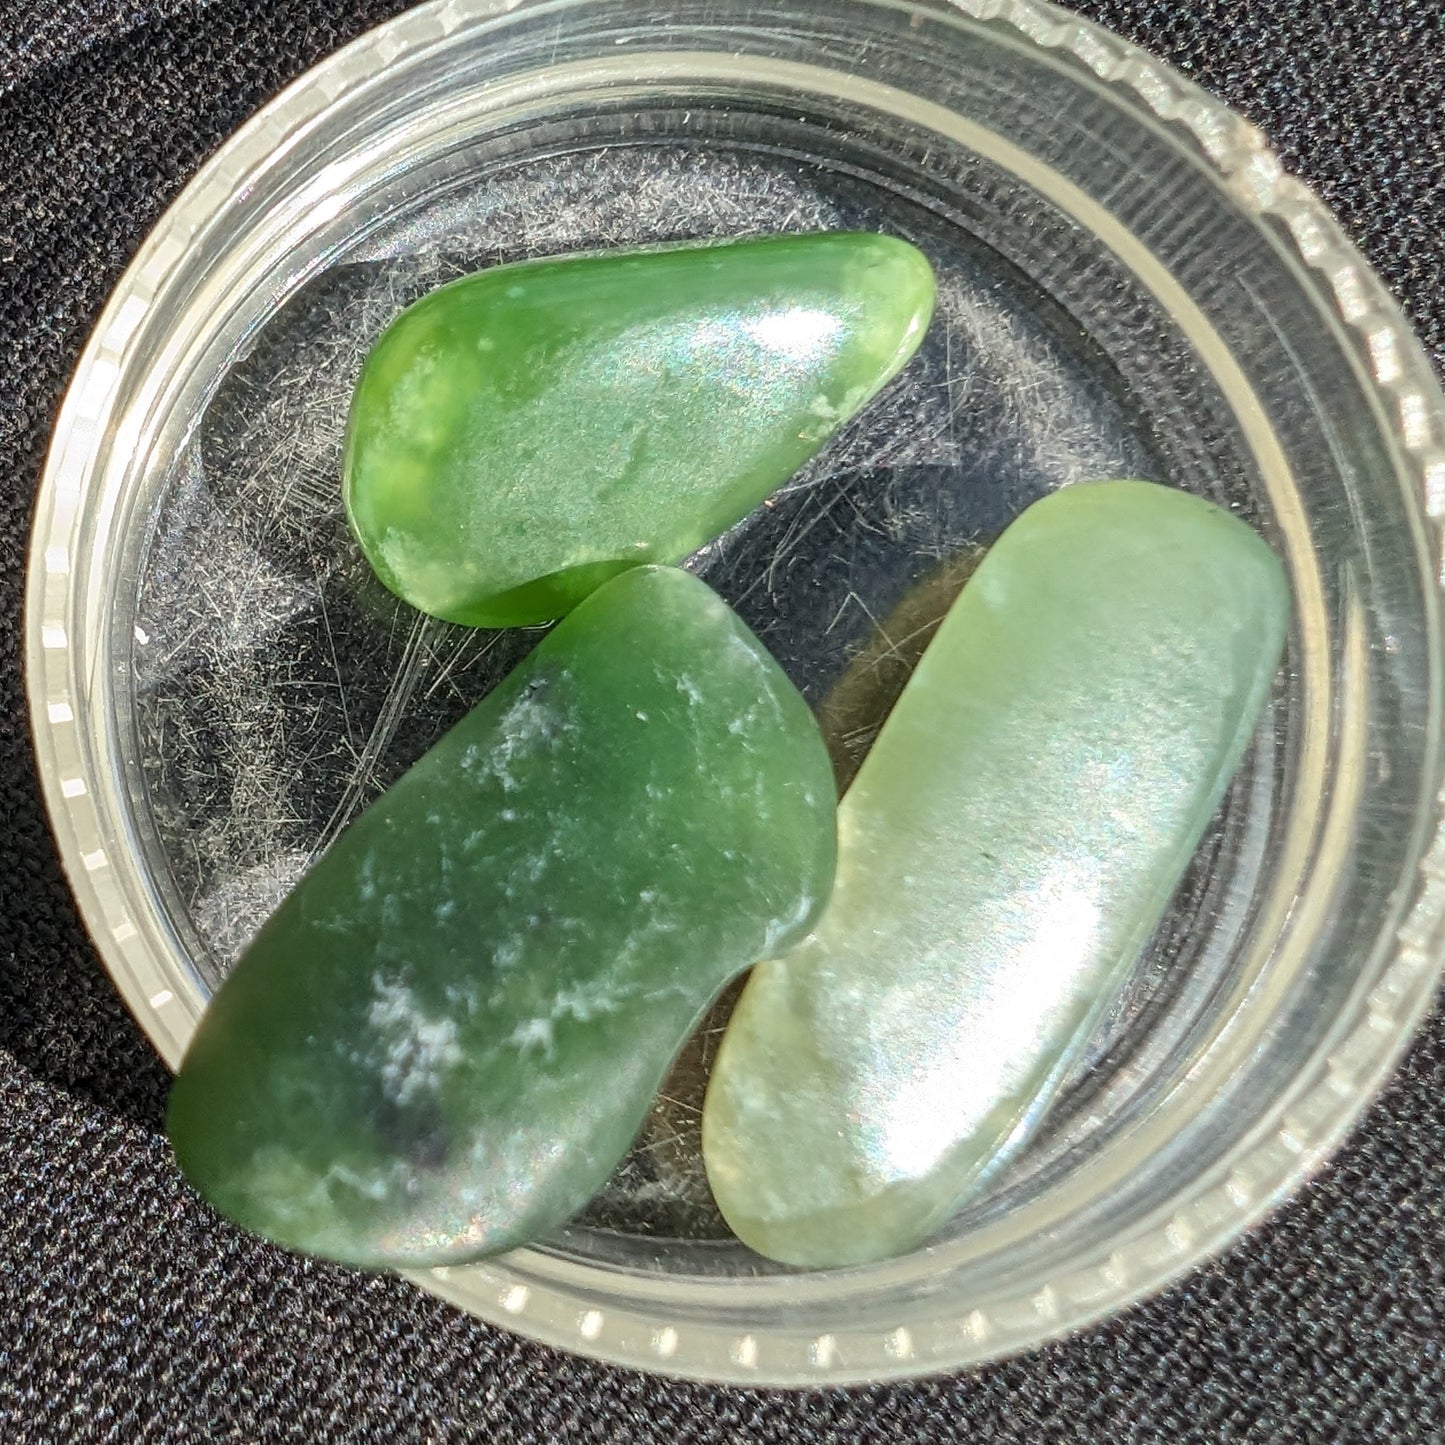 Emerald Quartz 3 tumbled stones 5-7g